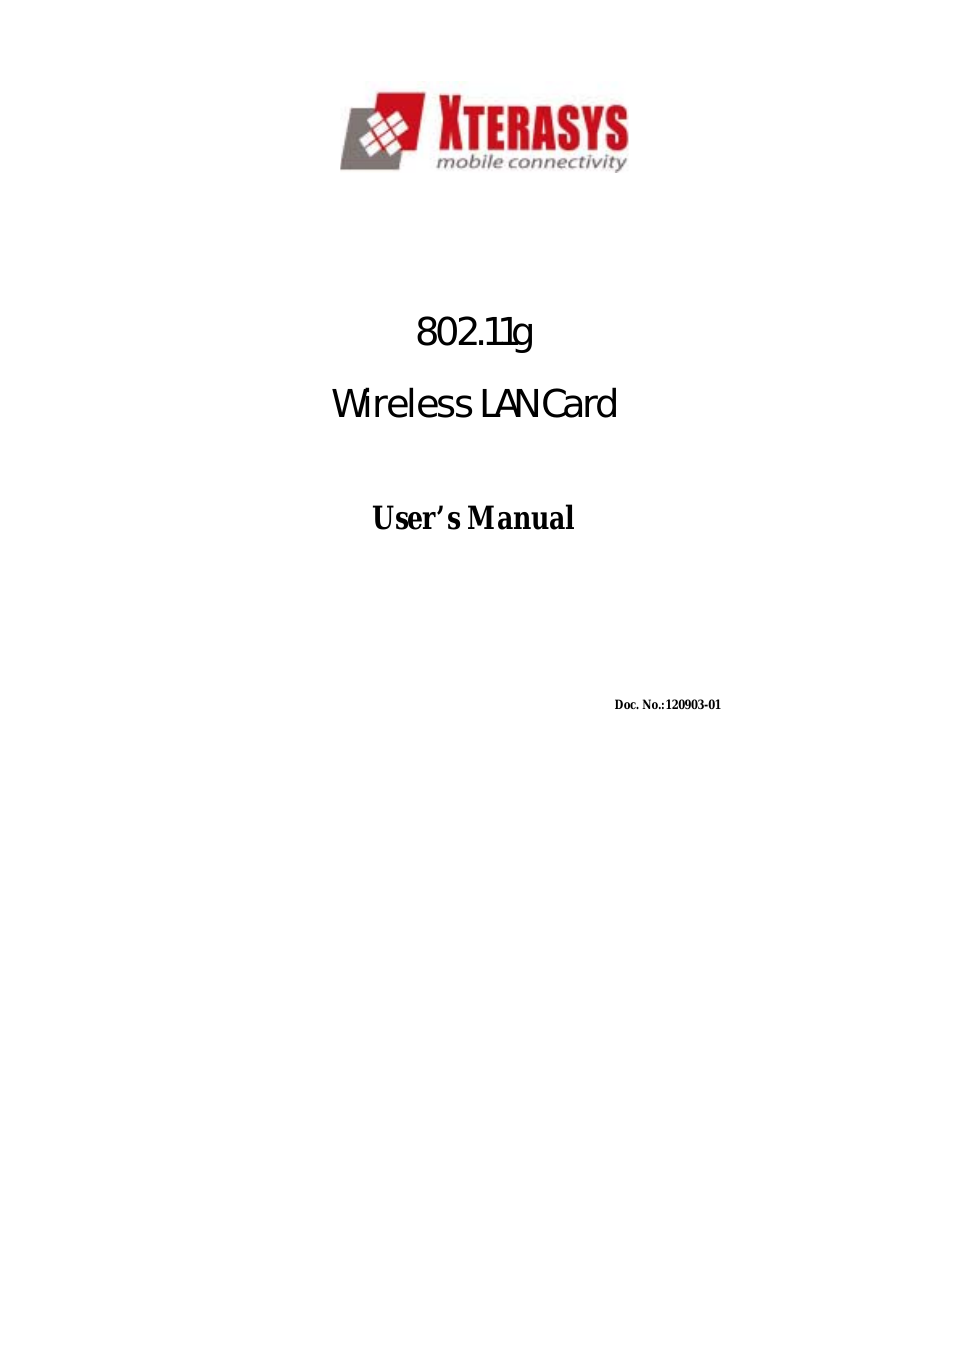 Wireless LAN Card